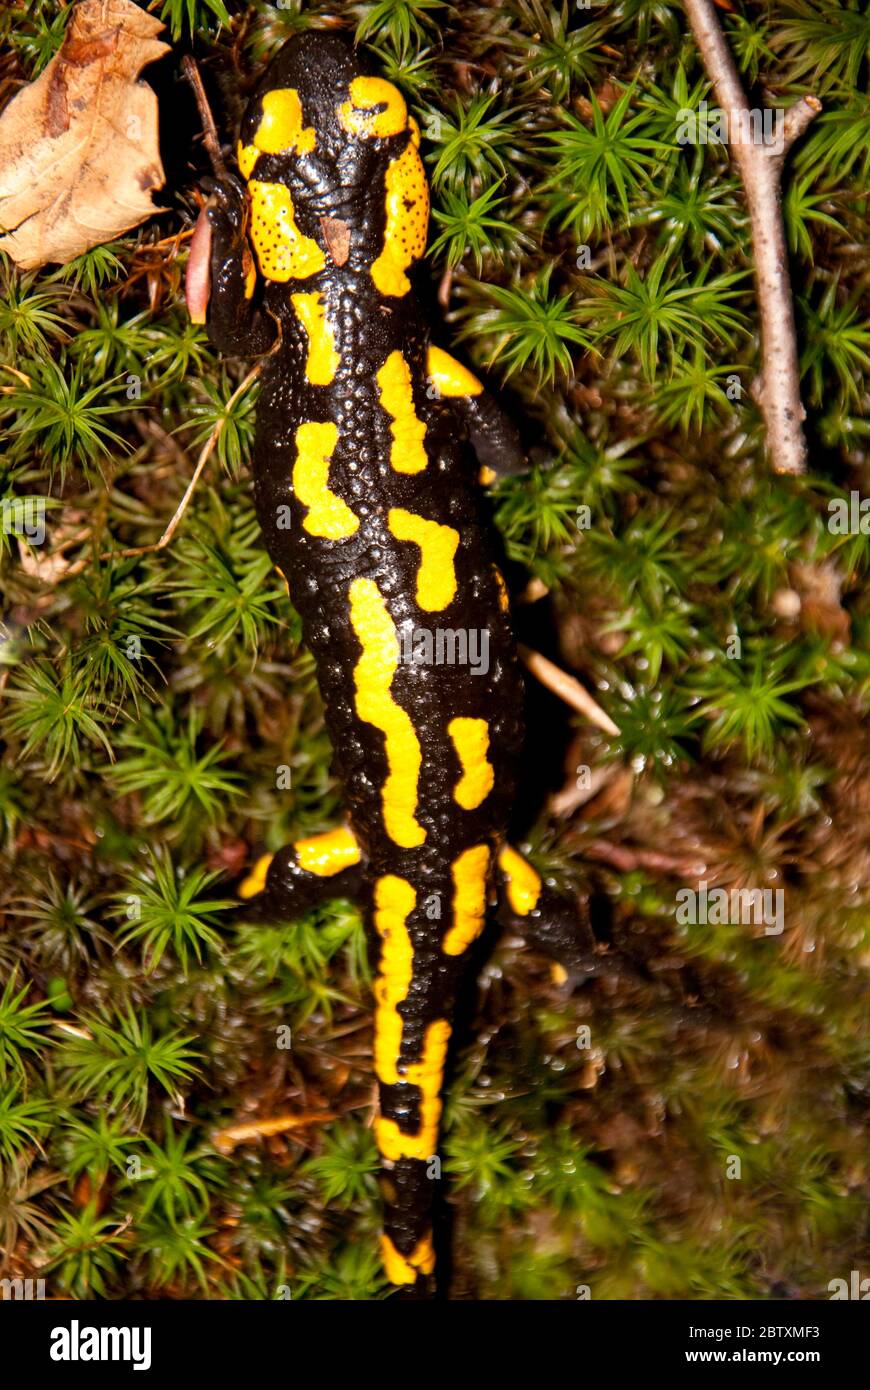 Salamandra pezzata Foto Stock